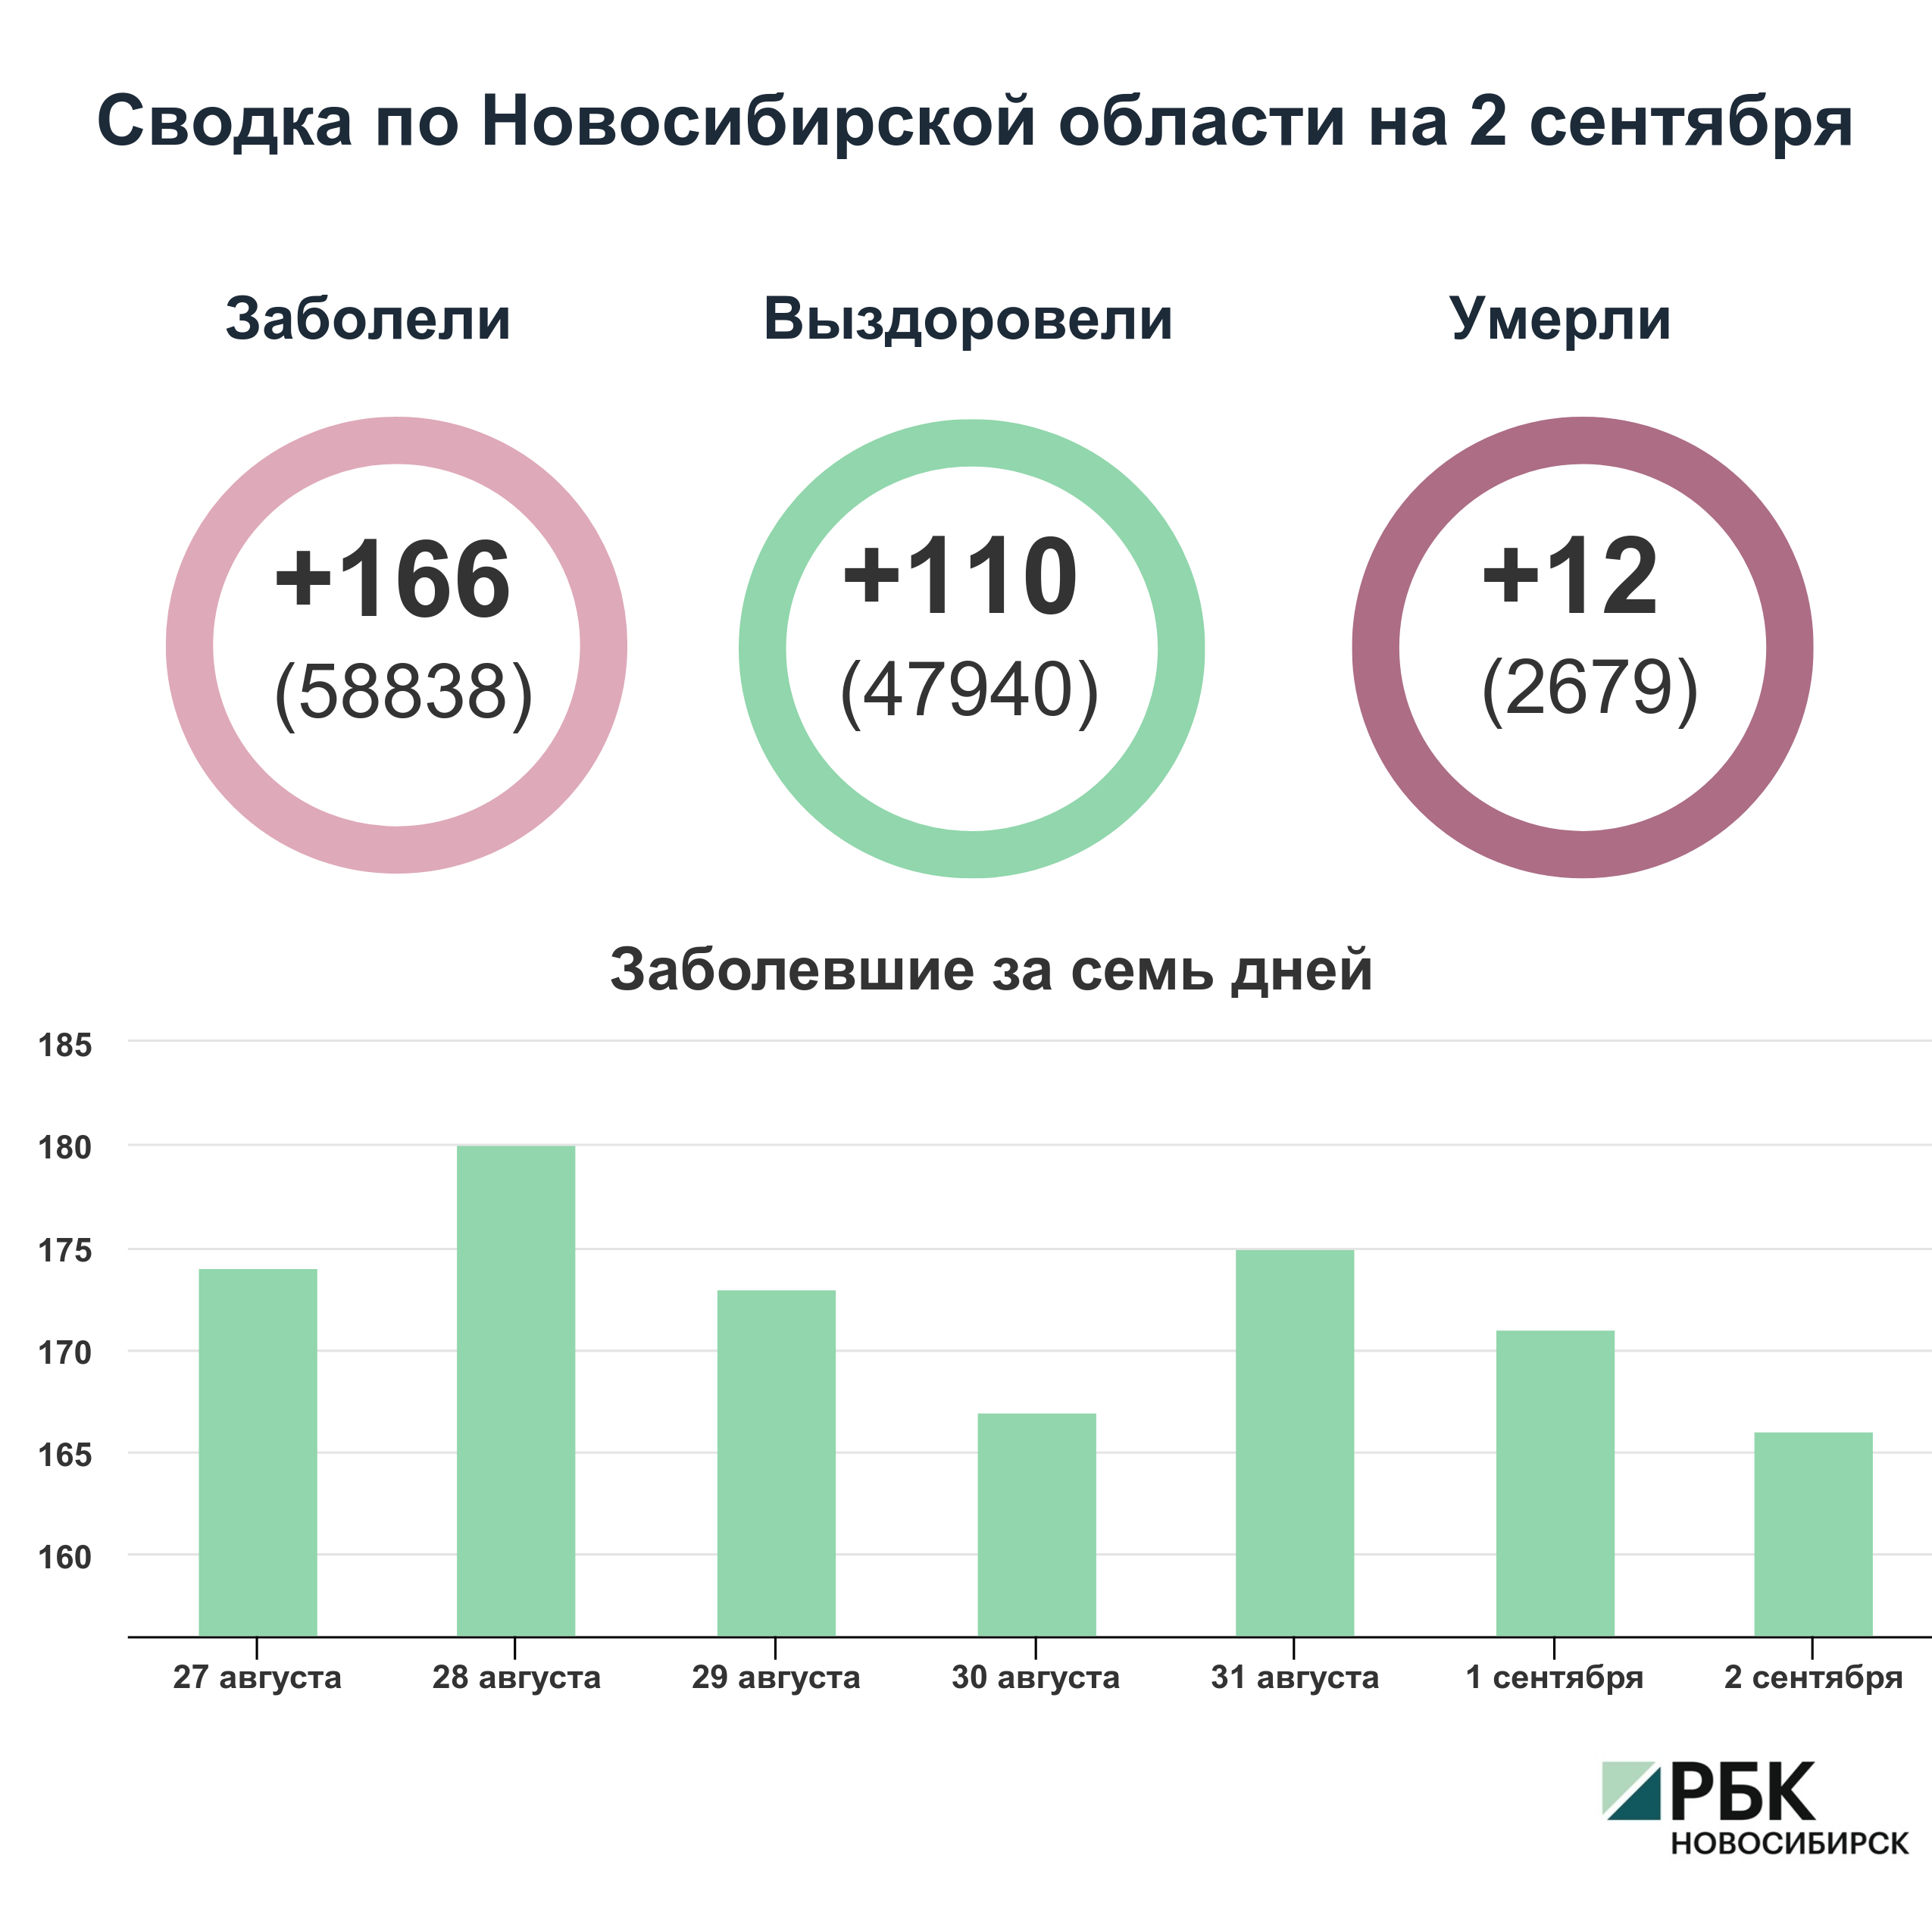 Коронавирус в Новосибирске: сводка на 2 сентября